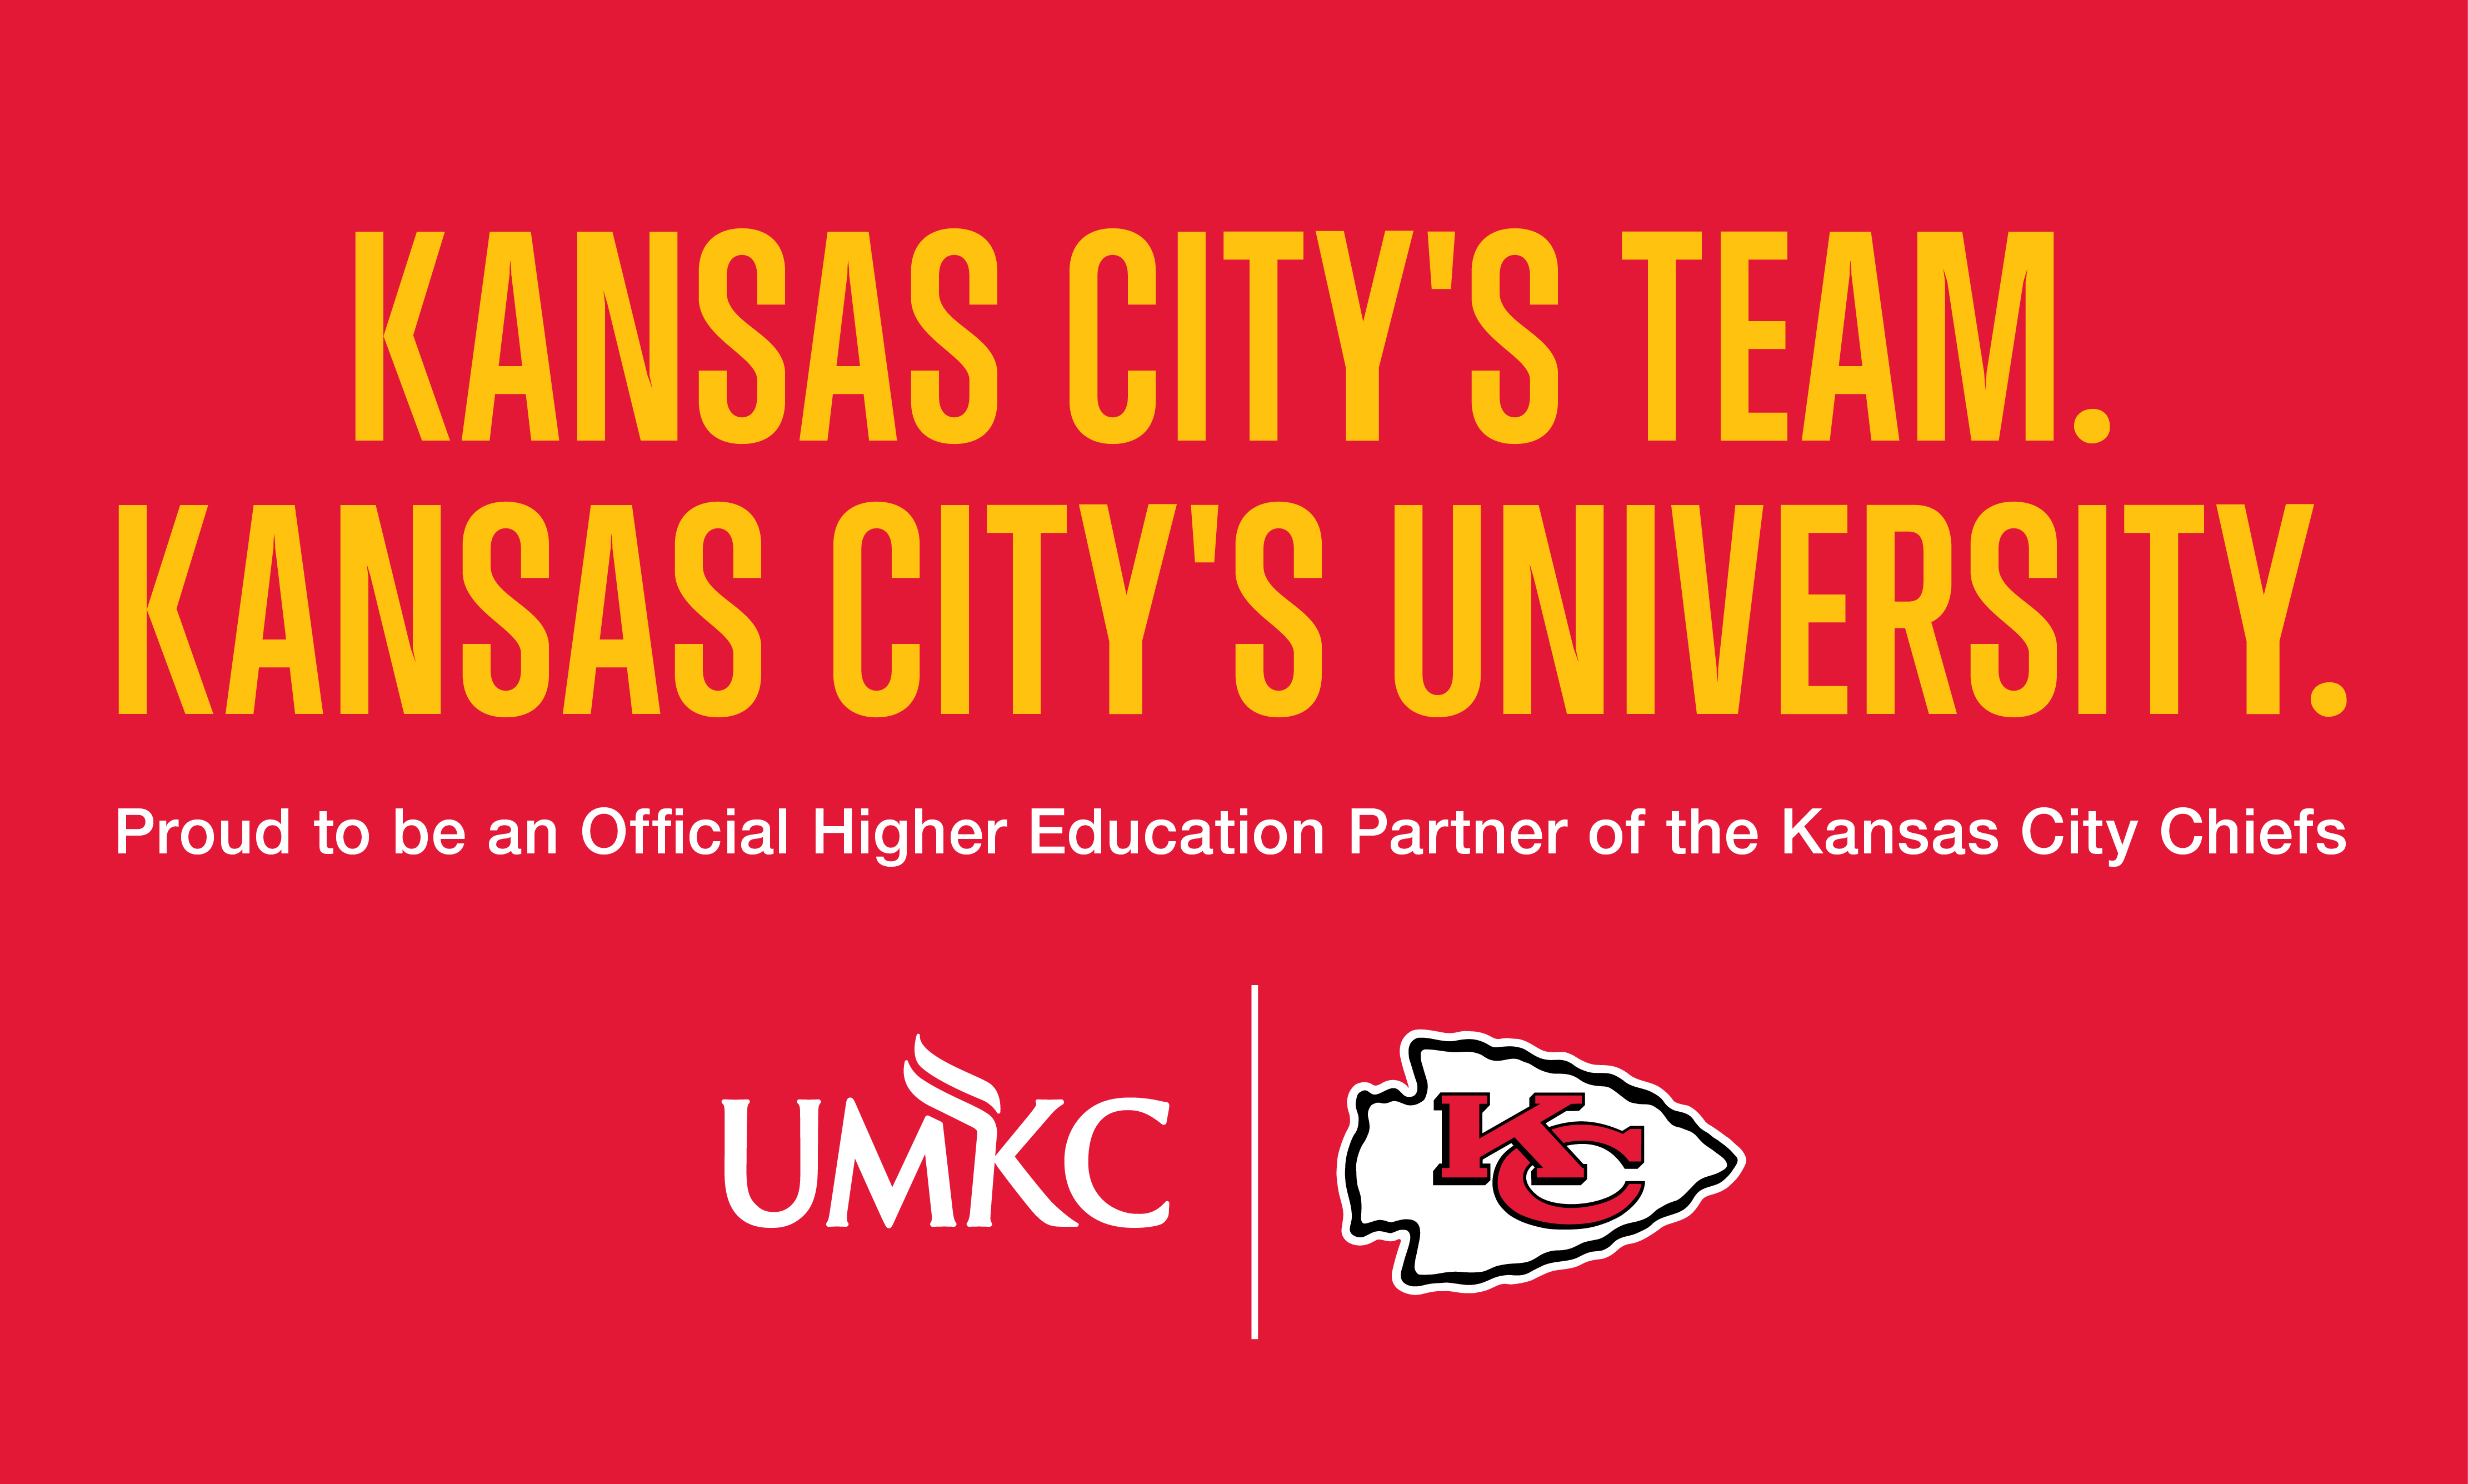 Announcing New Partnership Between Kansas City's University and Kansas City's Team